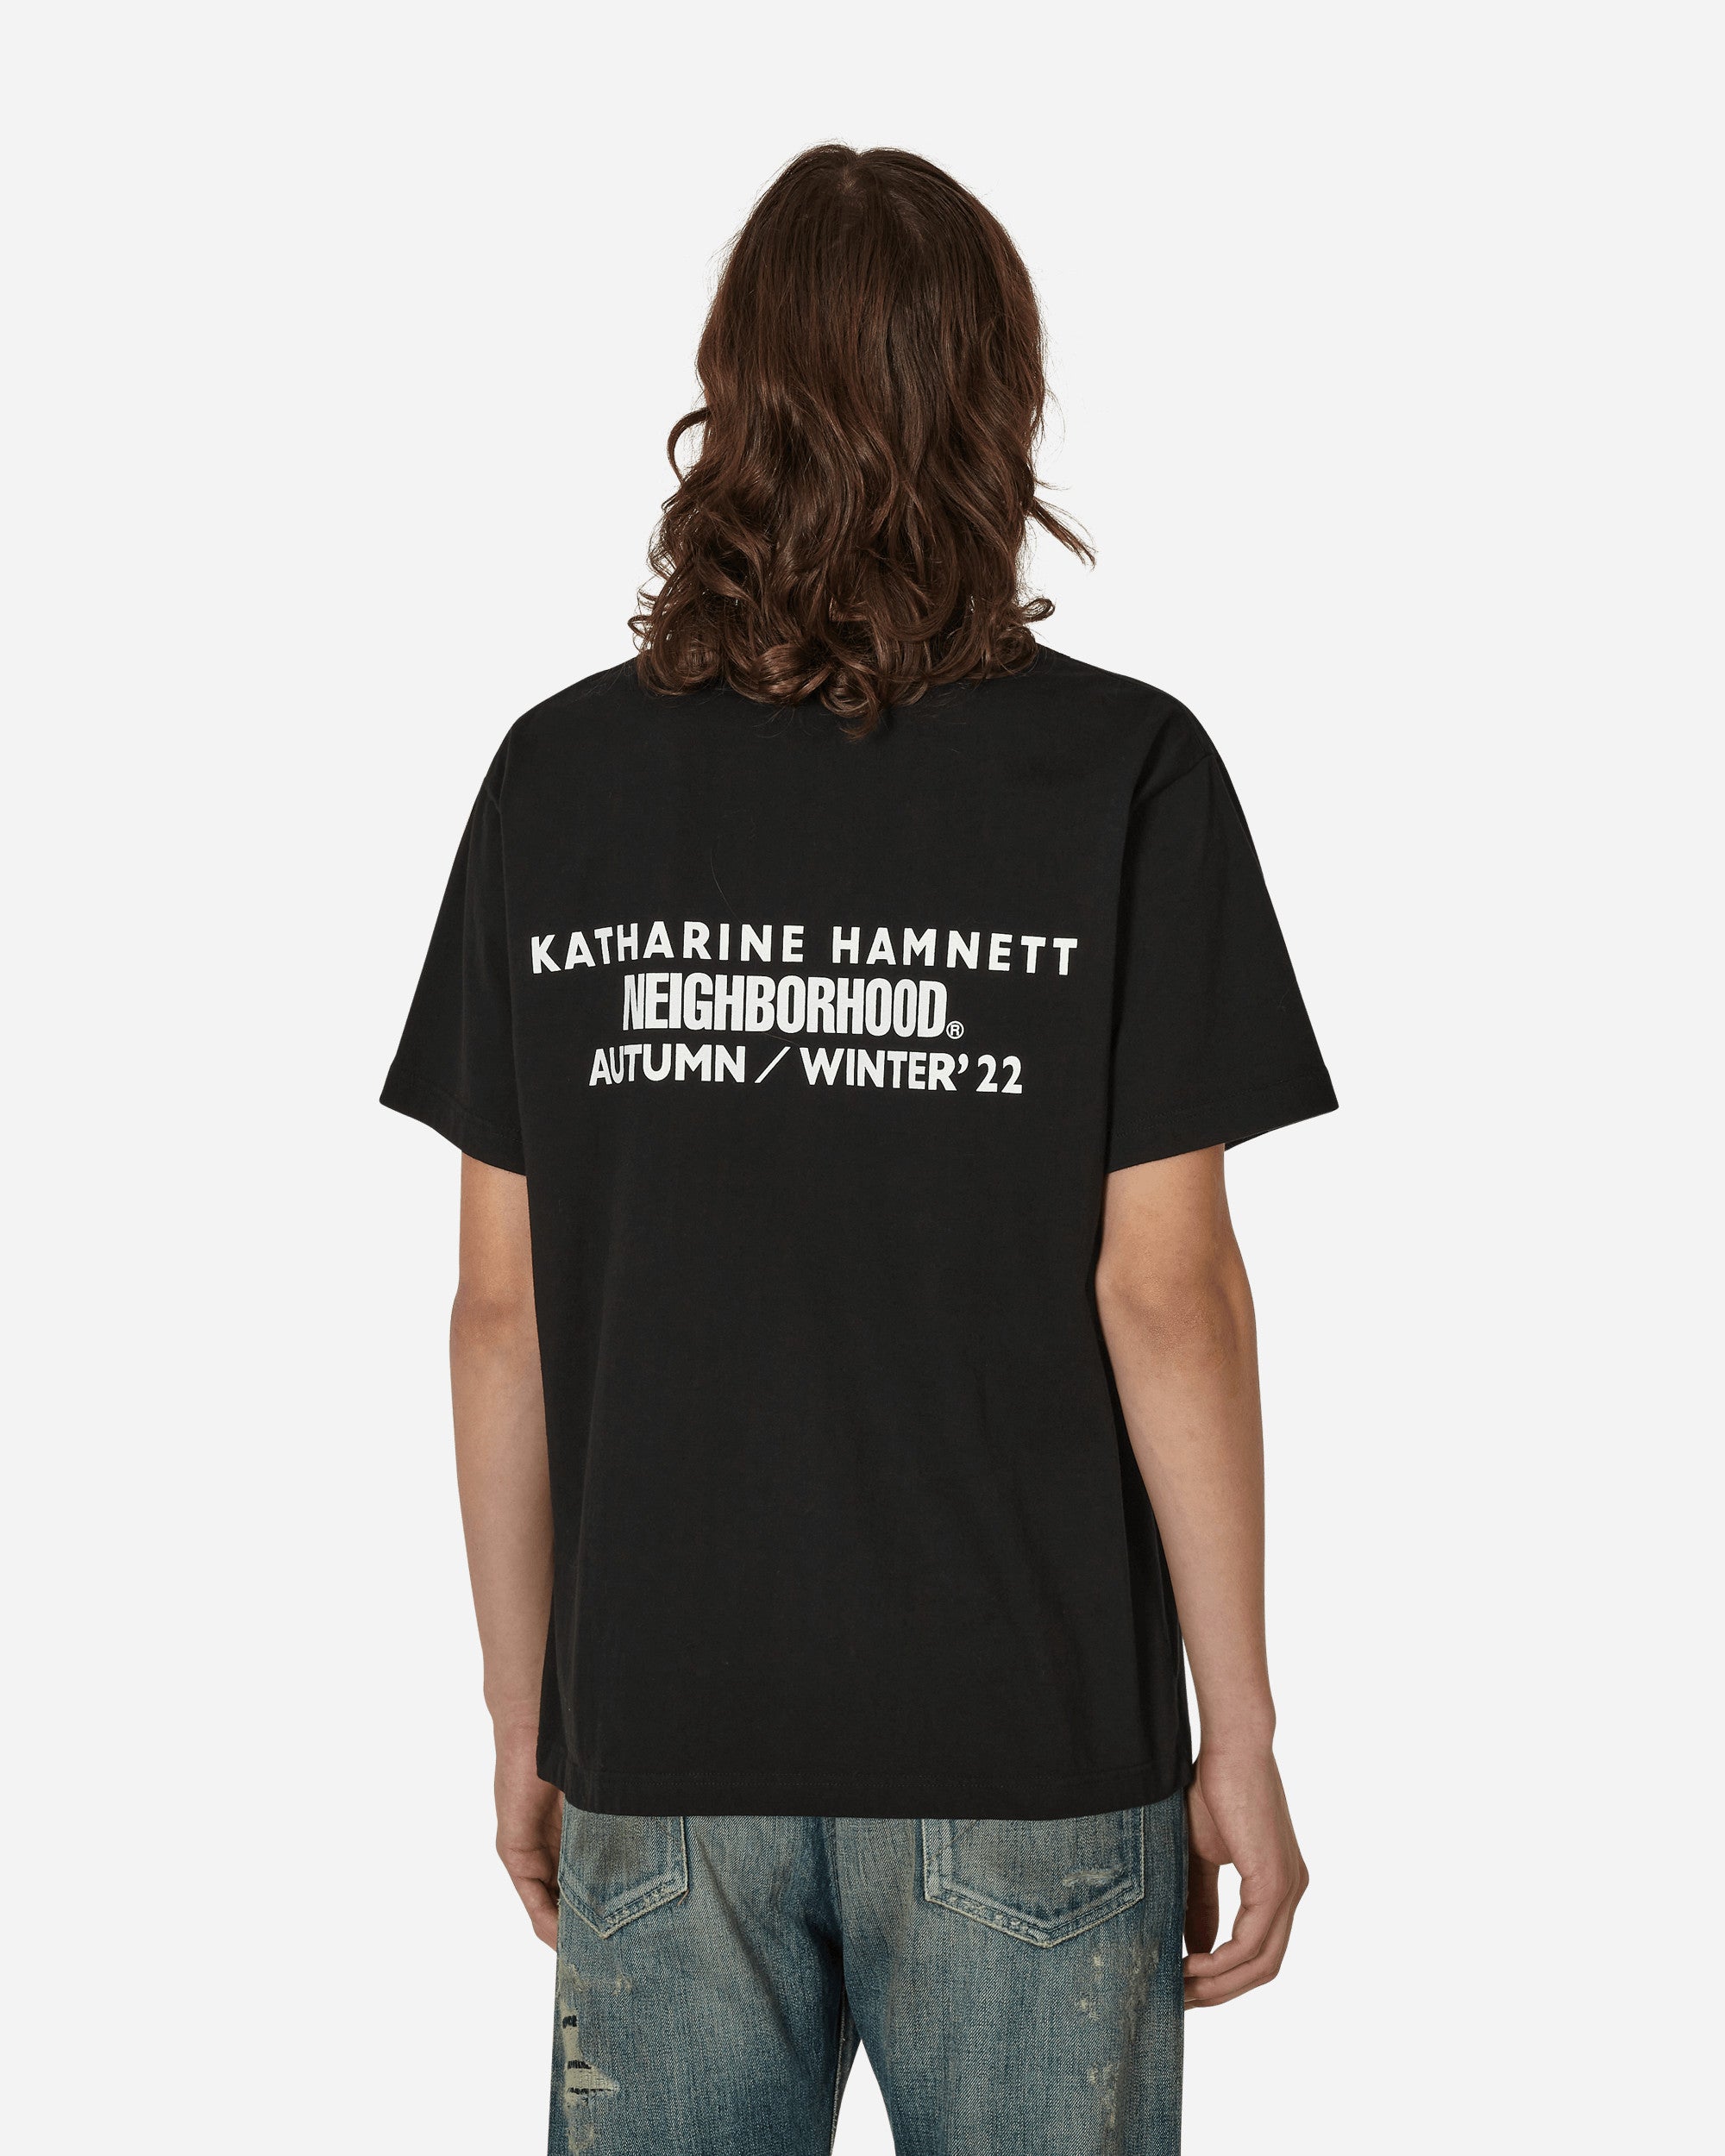 Neighborhood Katharine Hamnett T-Shirt Black - Slam Jam Official Store